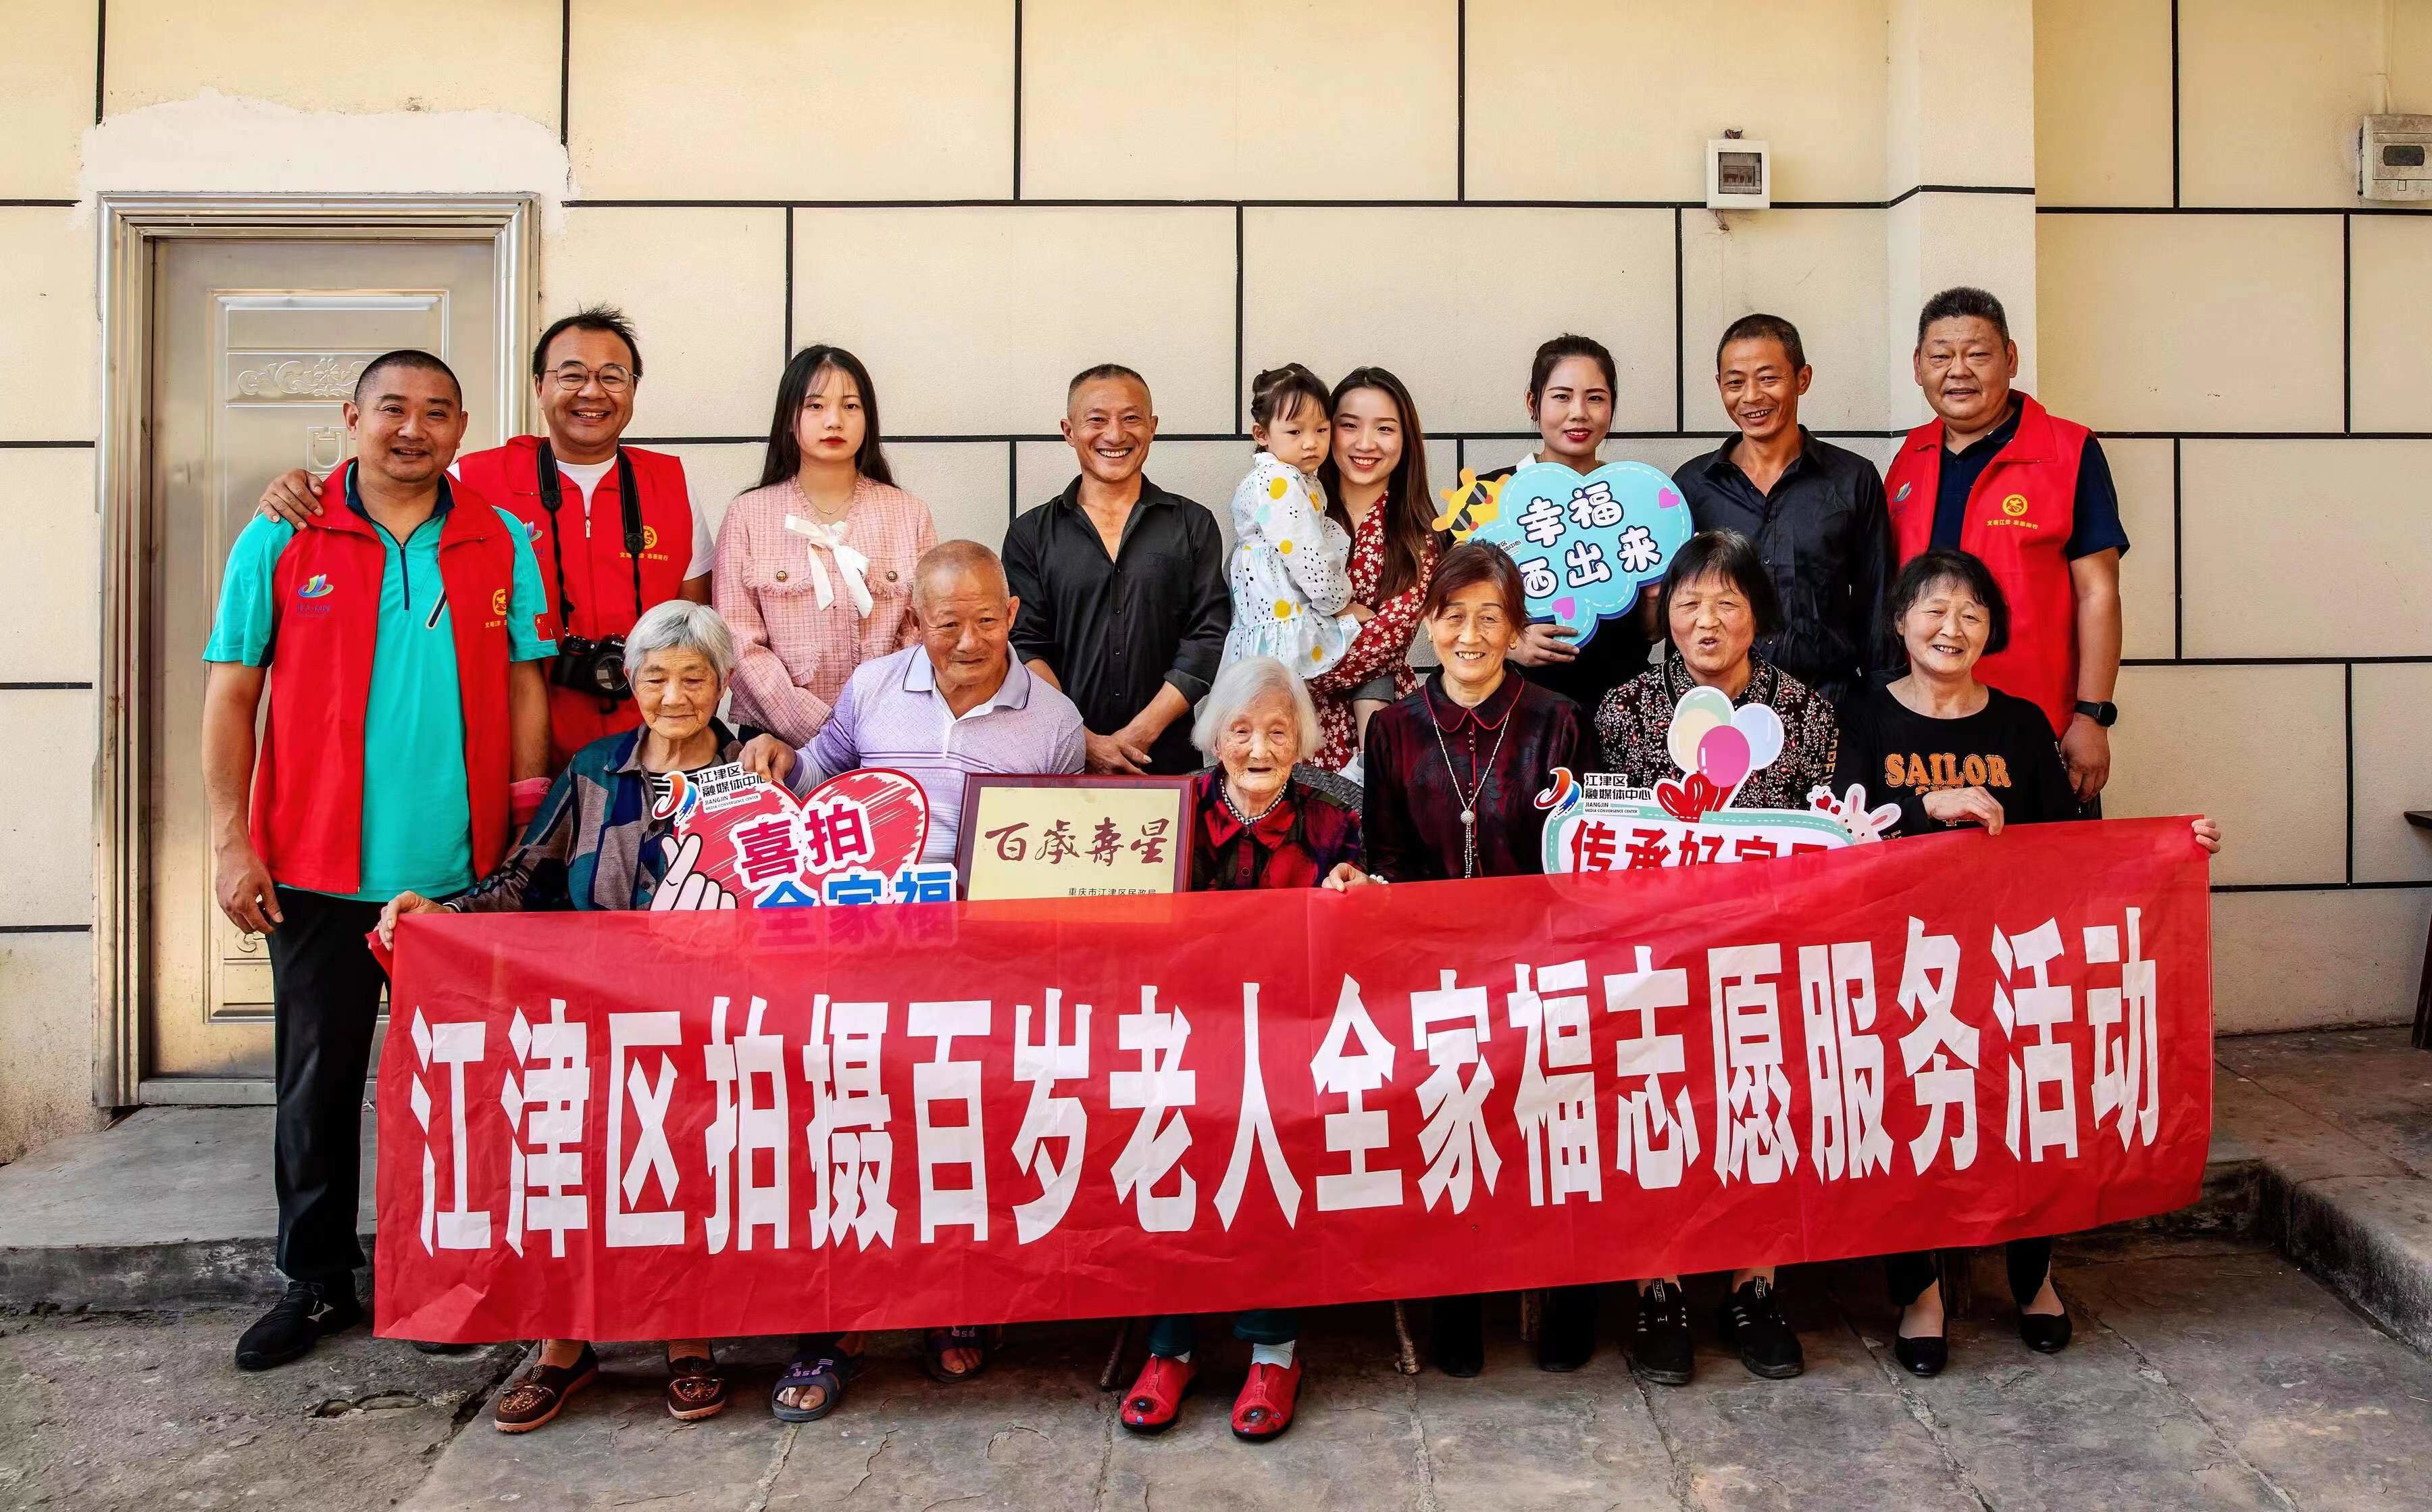 记录百岁老人家庭幸福时刻 江津区启动拍摄百岁老人全家福志愿服务活动